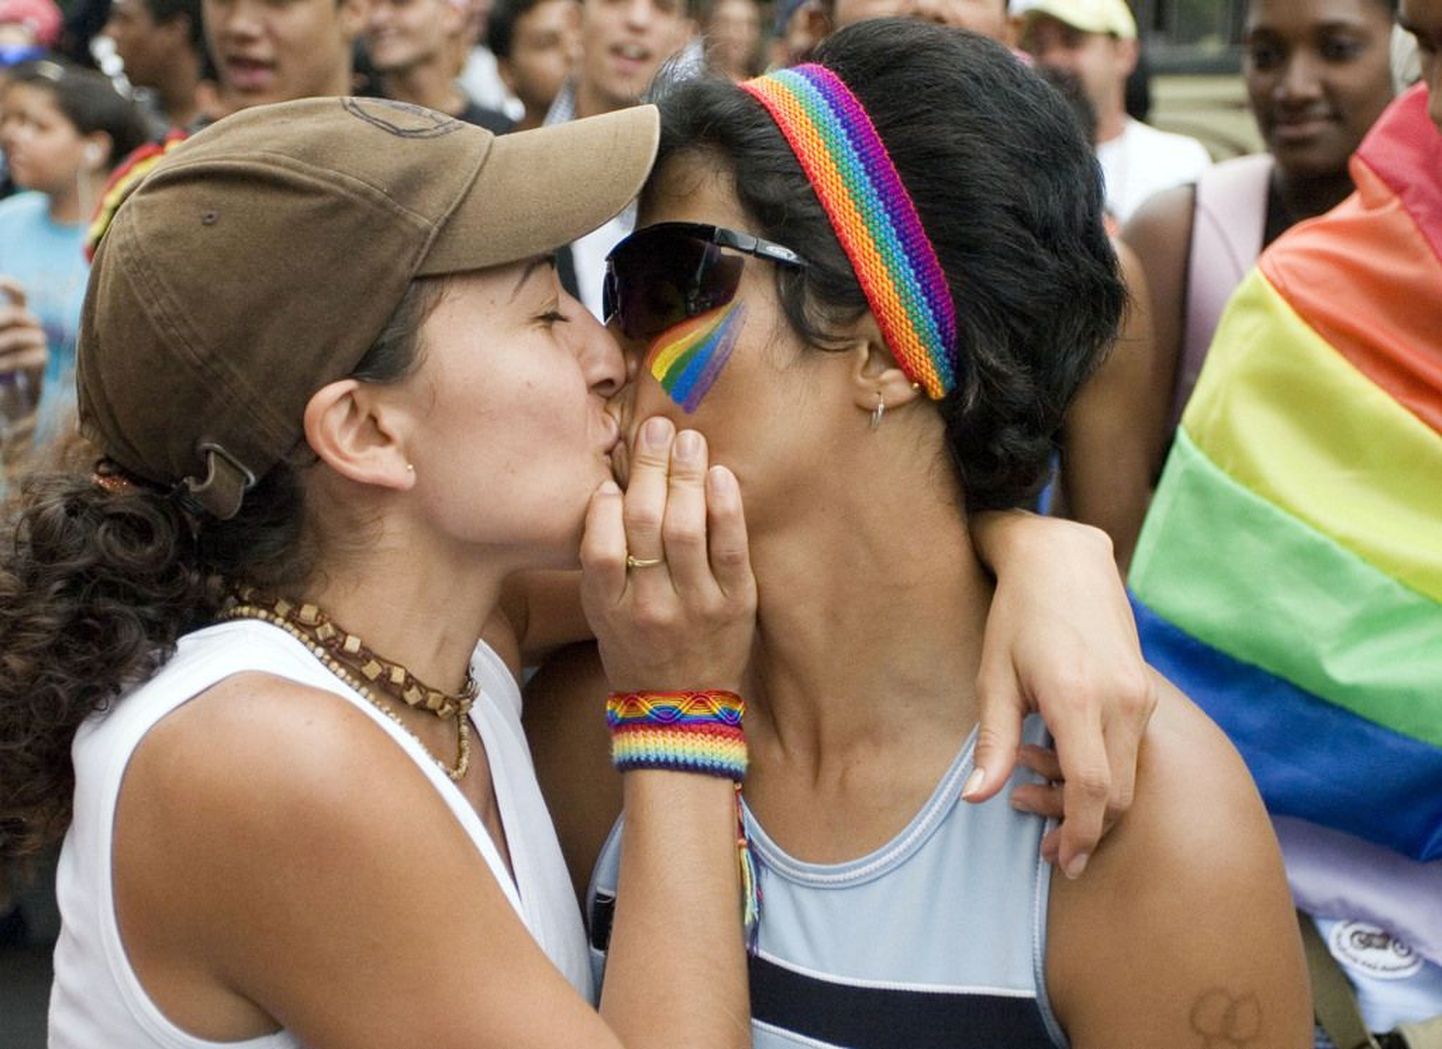 Kaks naist suudlemas Venezuela homoparaadil..